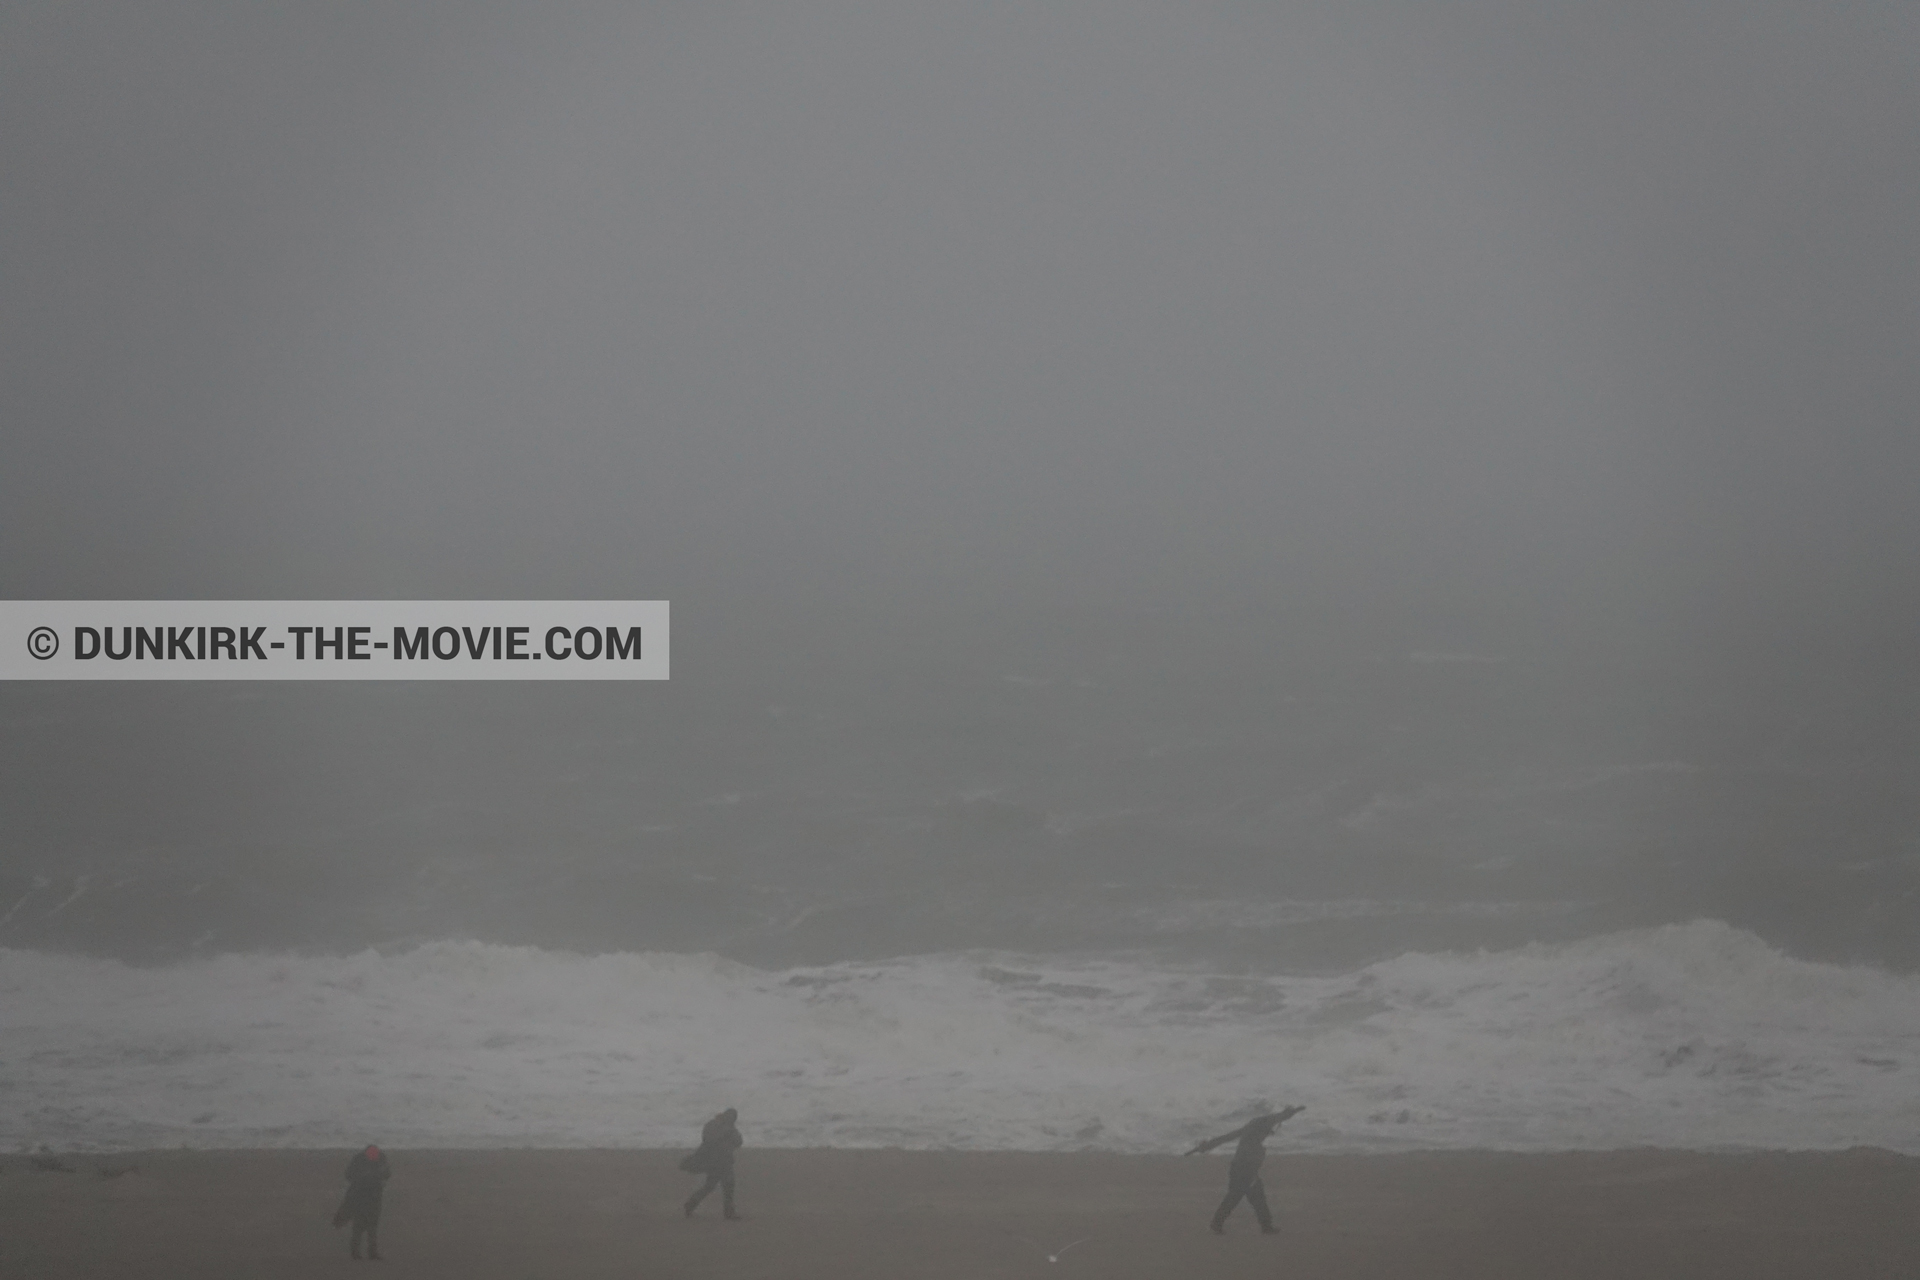 Photo avec ciel gris, figurants, mer agitée, plage,  des dessous du Film Dunkerque de Nolan